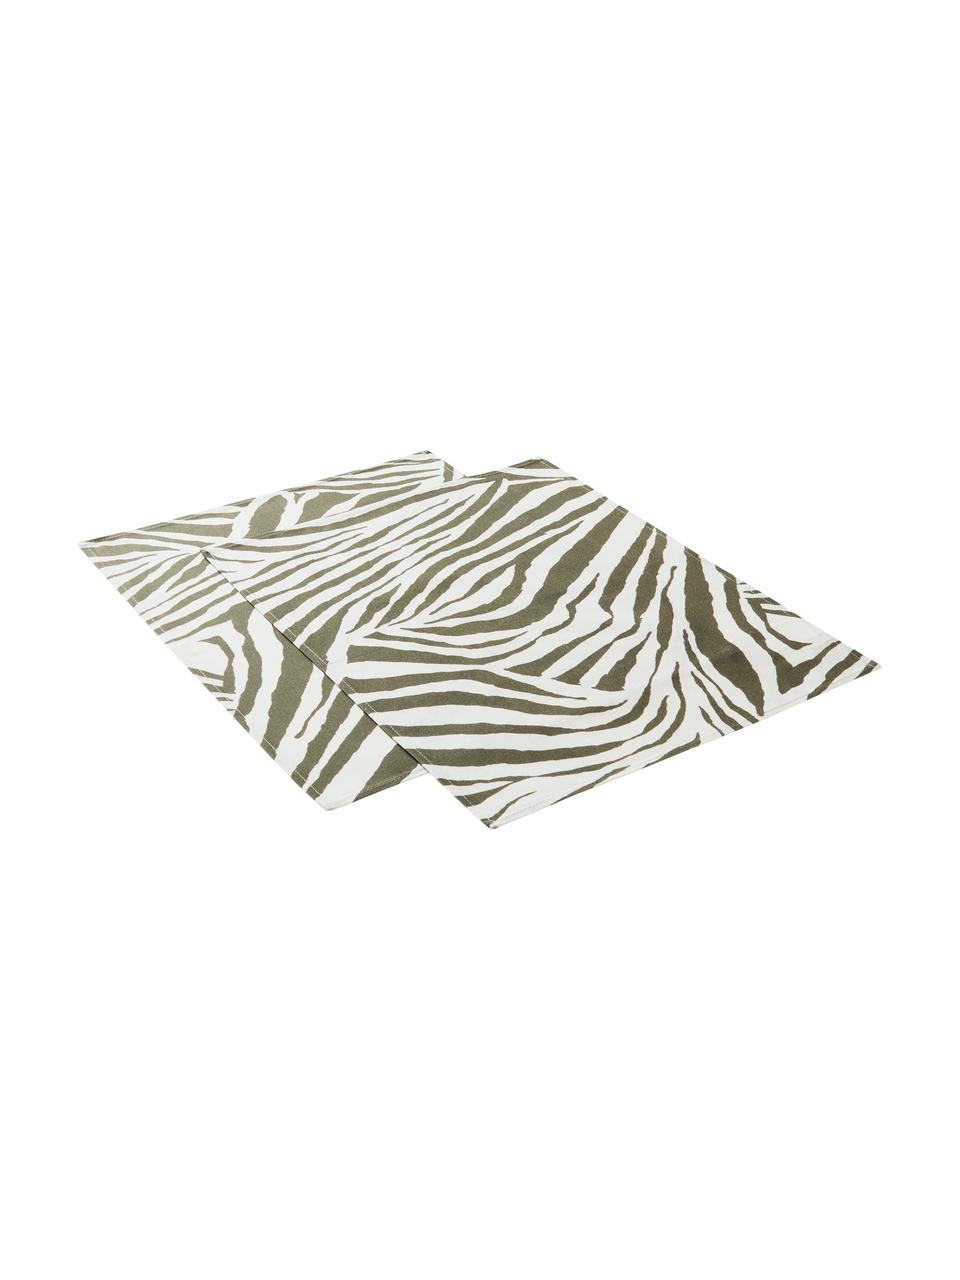 Tovaglietta americana in cotone con motivo zebra Zadie 2 pz, 100% cotone, Verde oliva, bianco crema, Larg. 35 x Lung. 45 cm